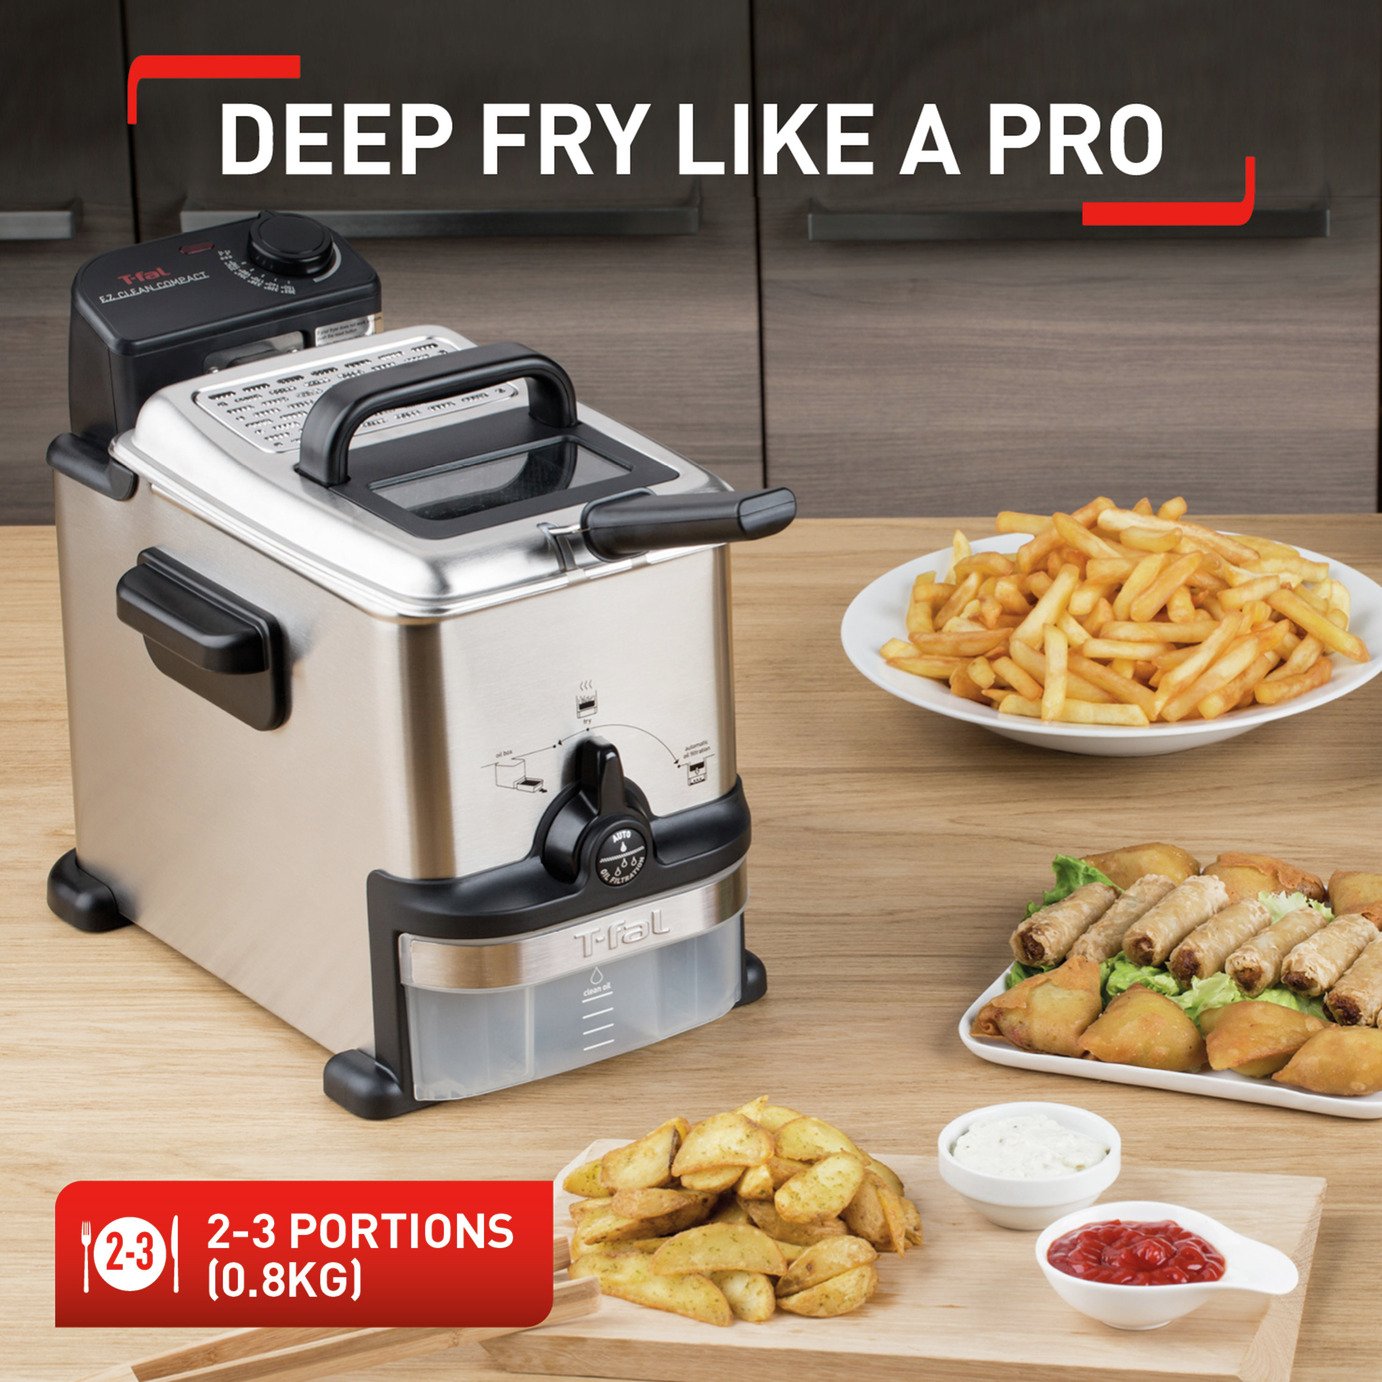 Tefal FR701640 Oleoclean Compact Deep Fryer Review